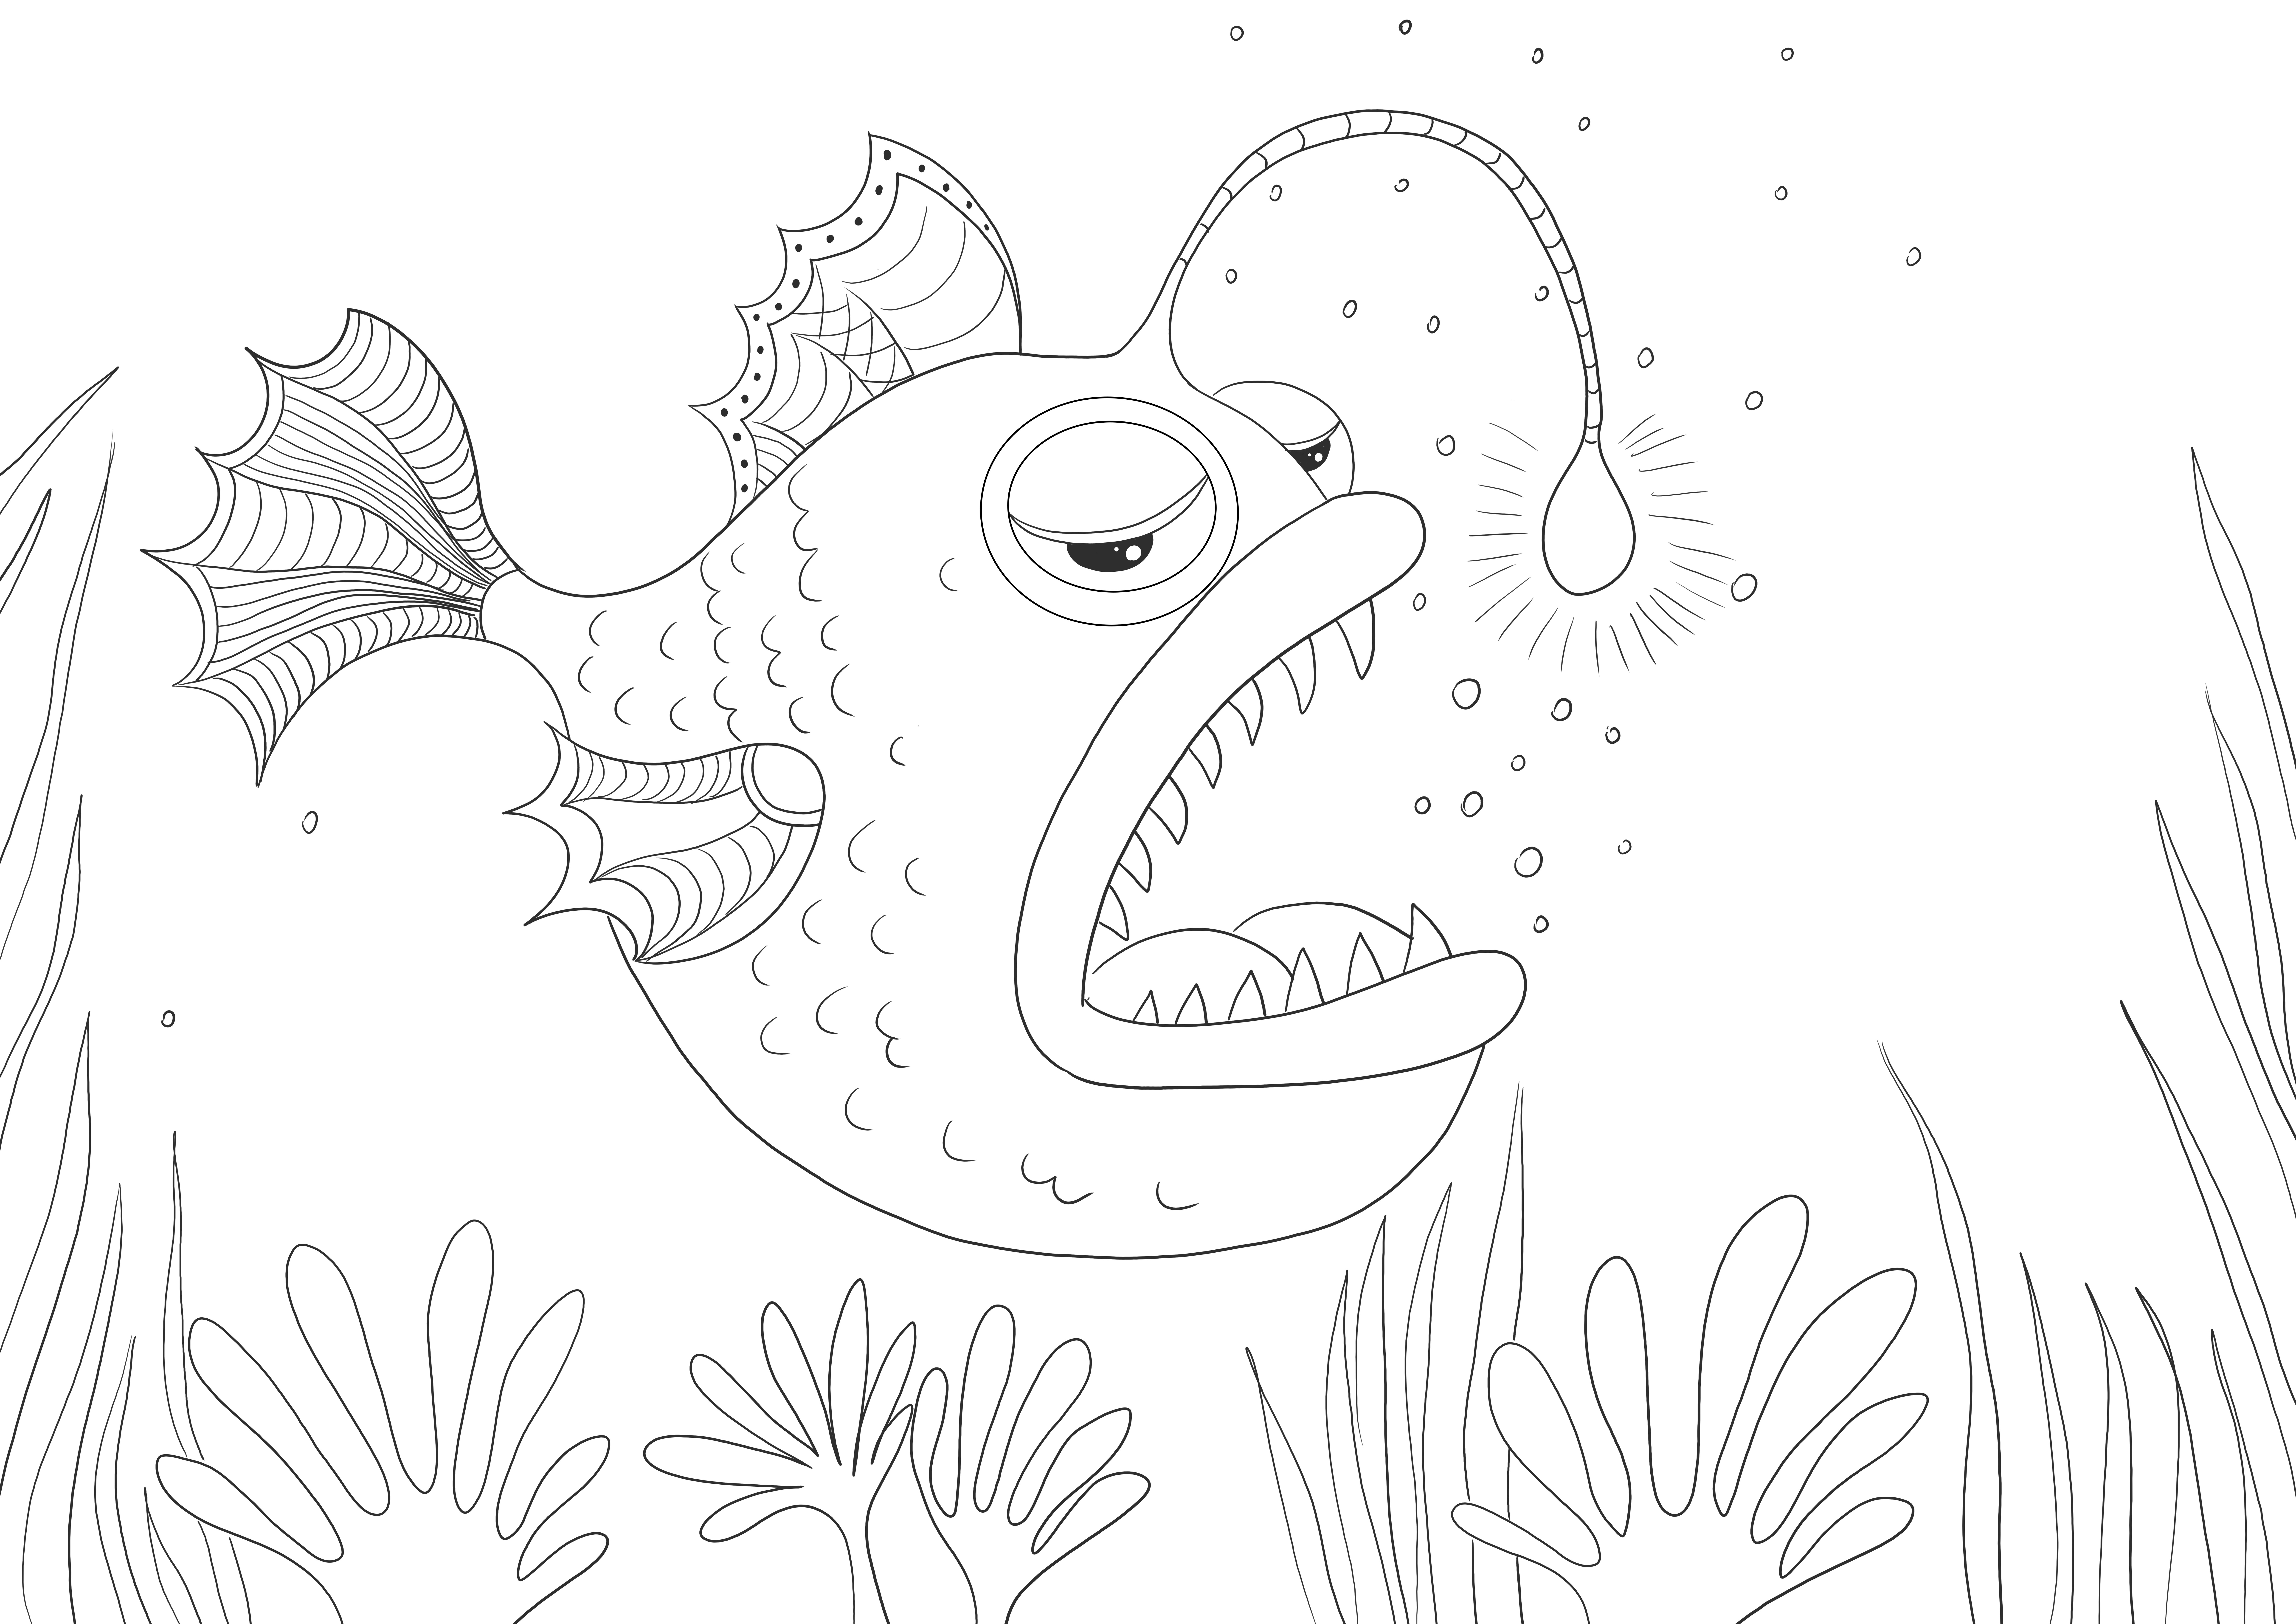 Fierce Anglerfish de colorat și descărcat gratuit pentru copii